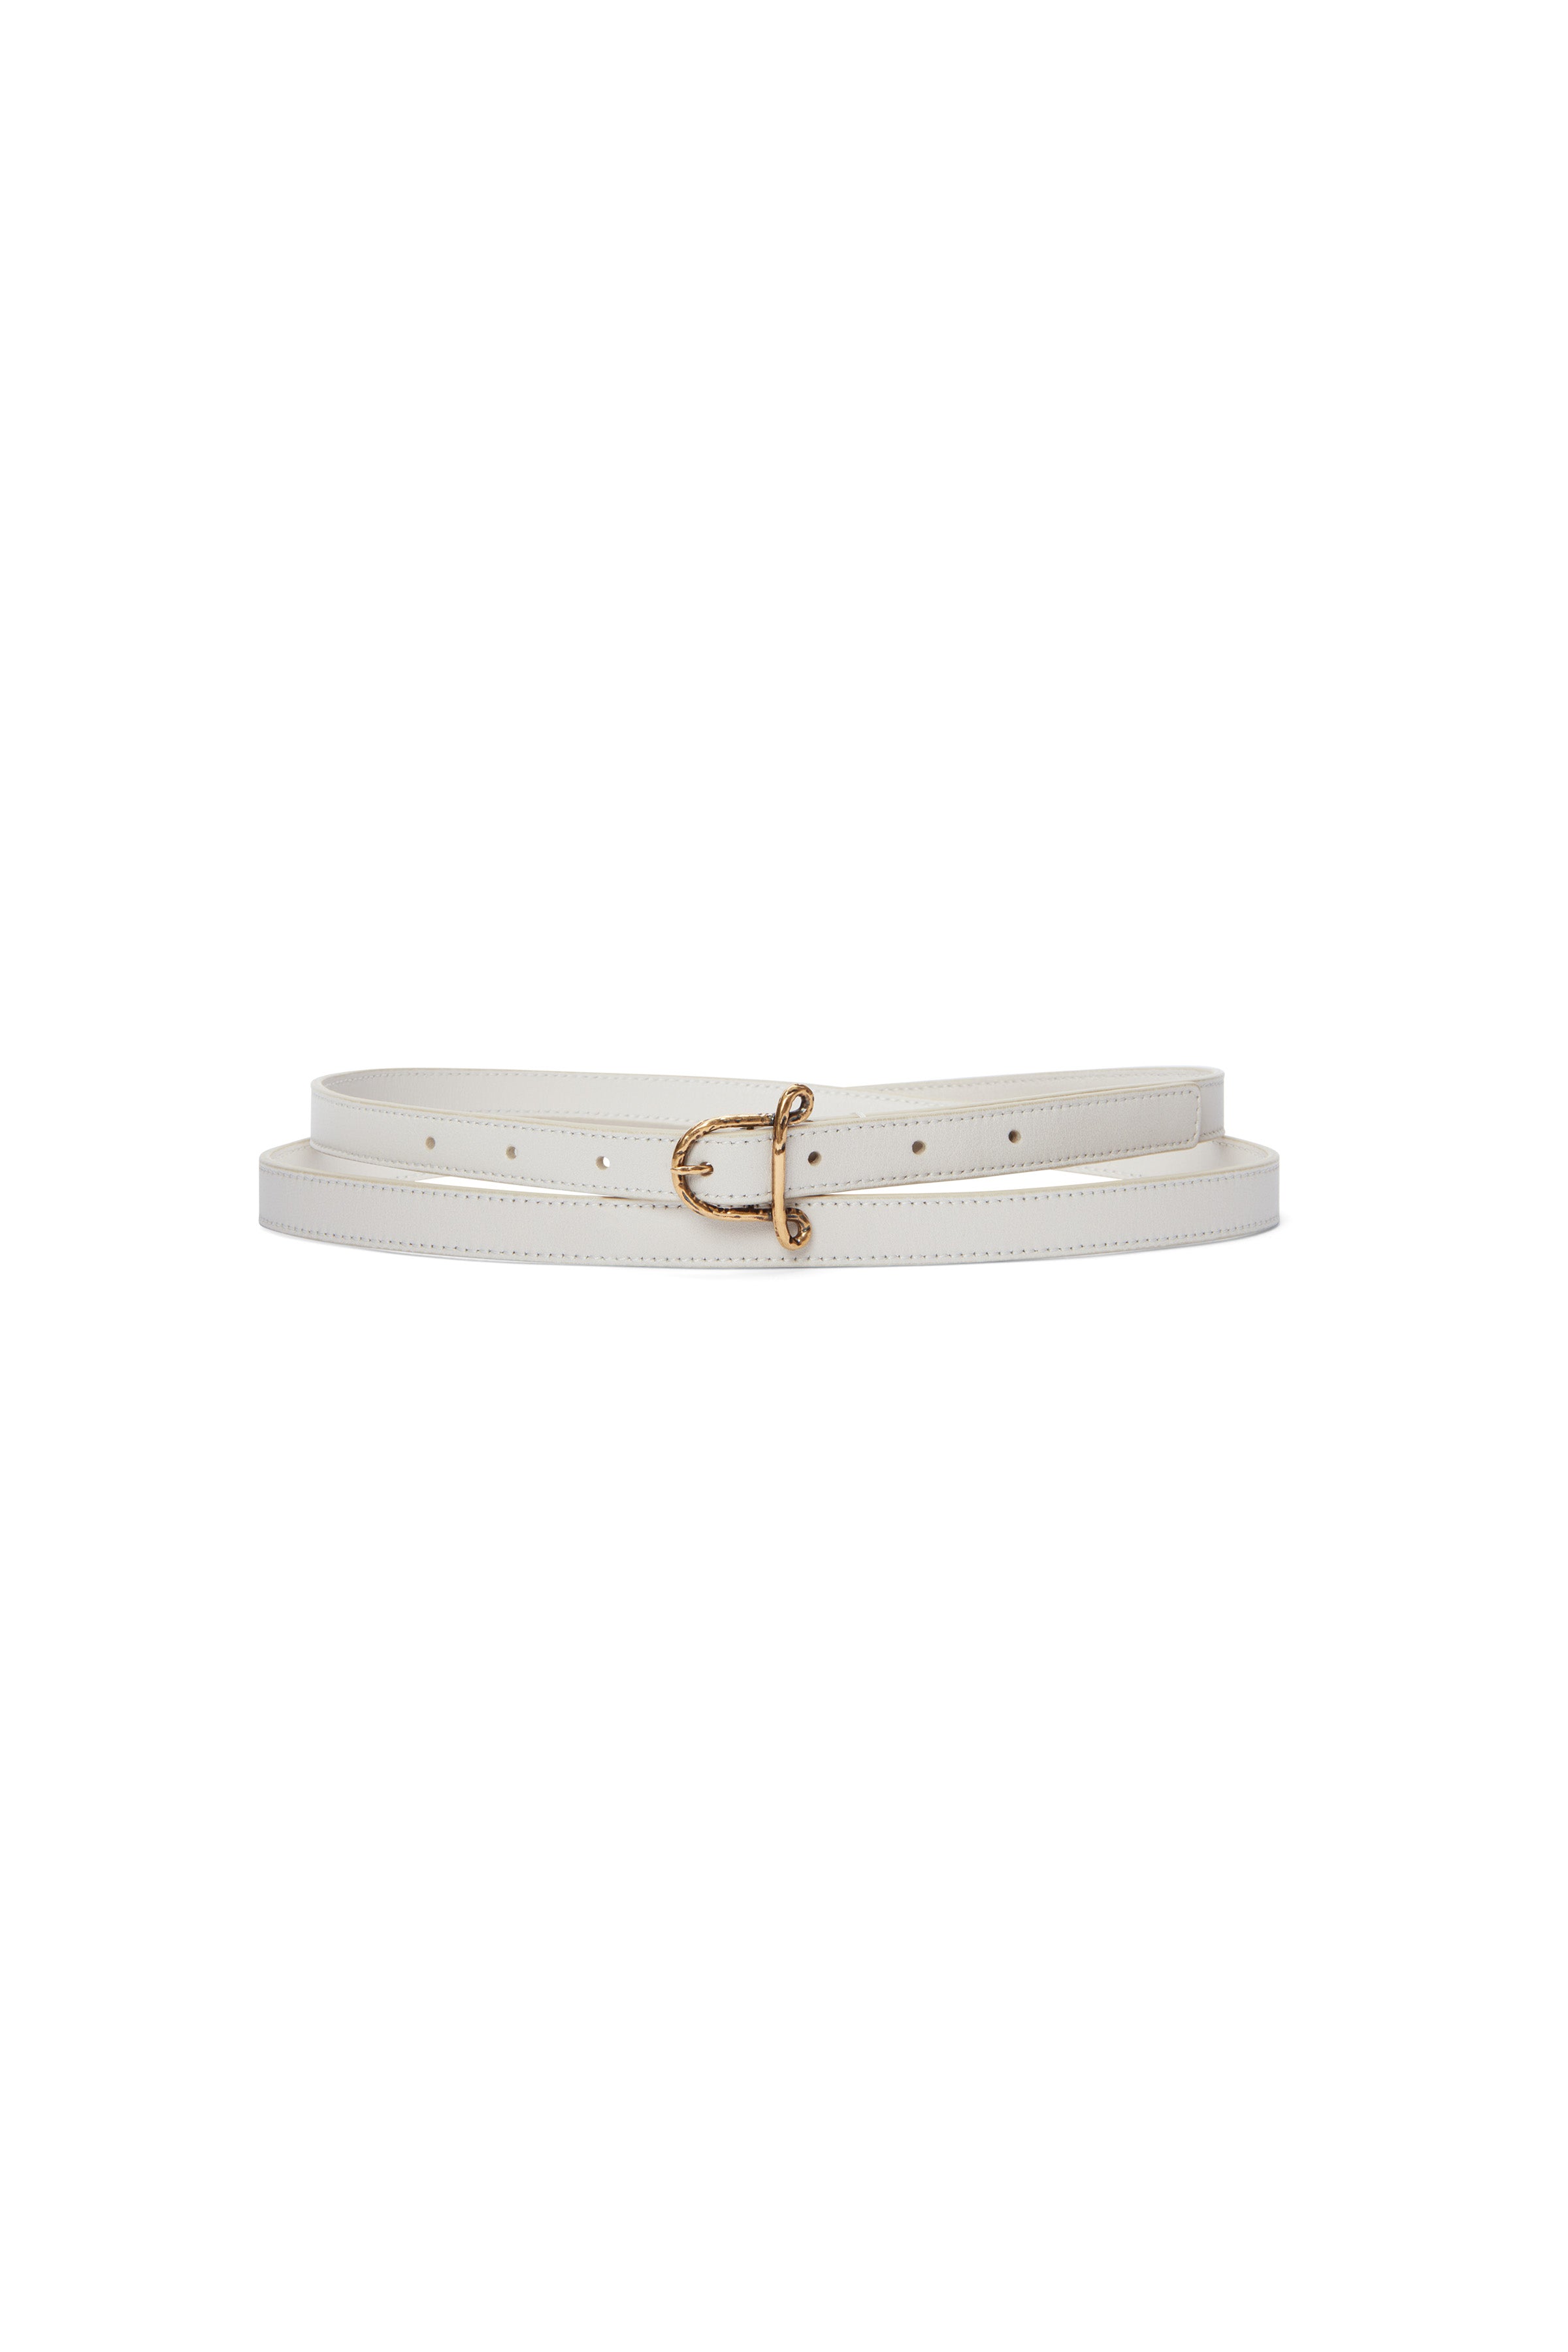 Altuzarra Loopy leather belt - White